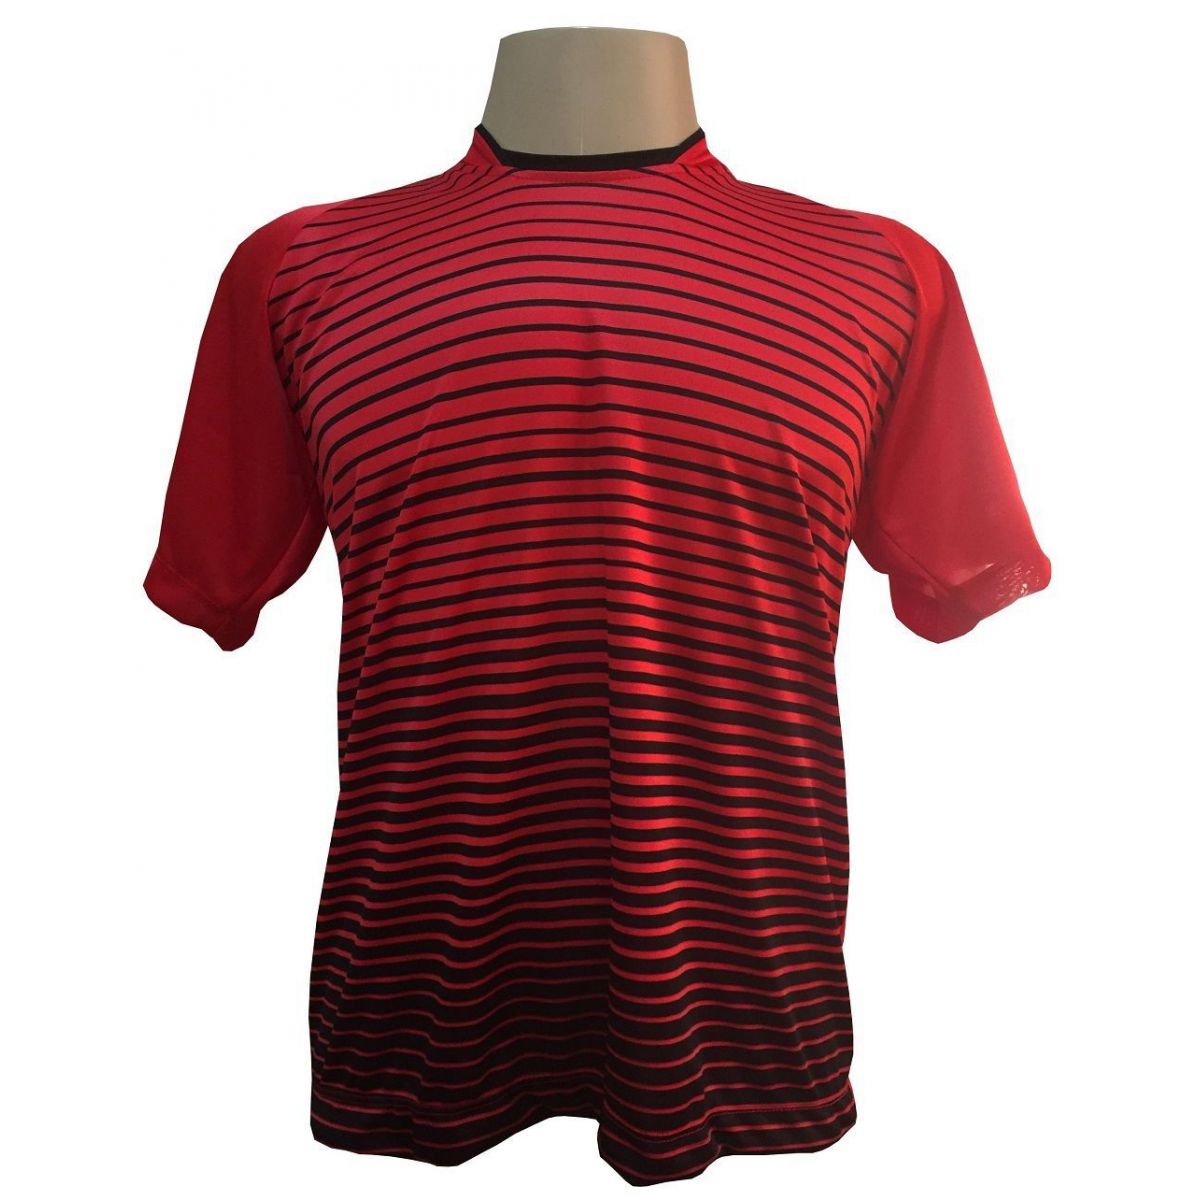 Uniforme Esportivo com 12 camisas modelo City Vermelho/Preto + 12 calções modelo Copa + 1 Goleiro + Brindes